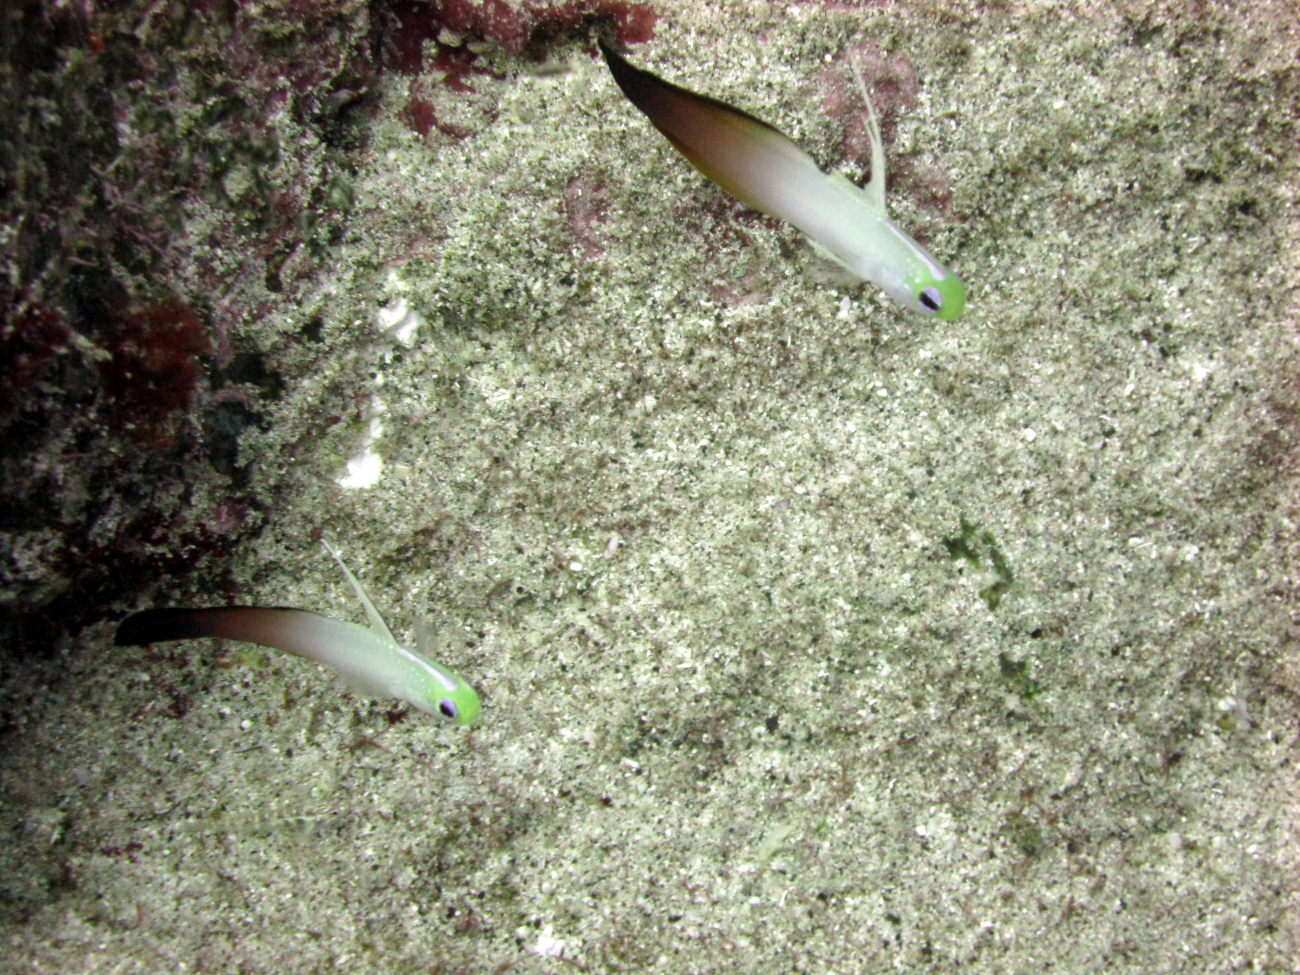 Fire dartfish (Nemateleotris magnifica)